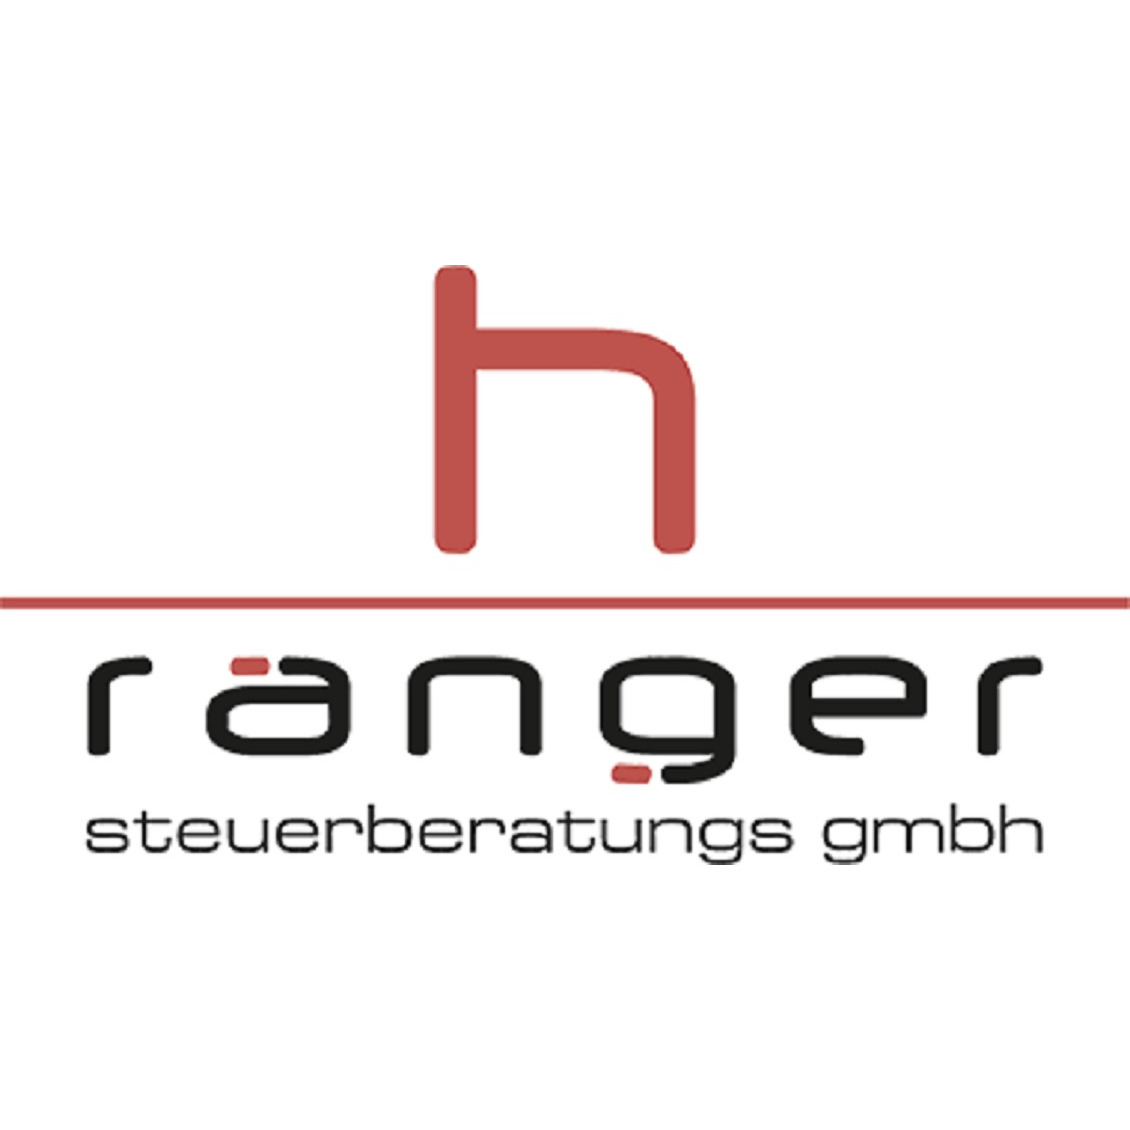 H. RANGER Steuerberatungs GmbH 4600 Wels